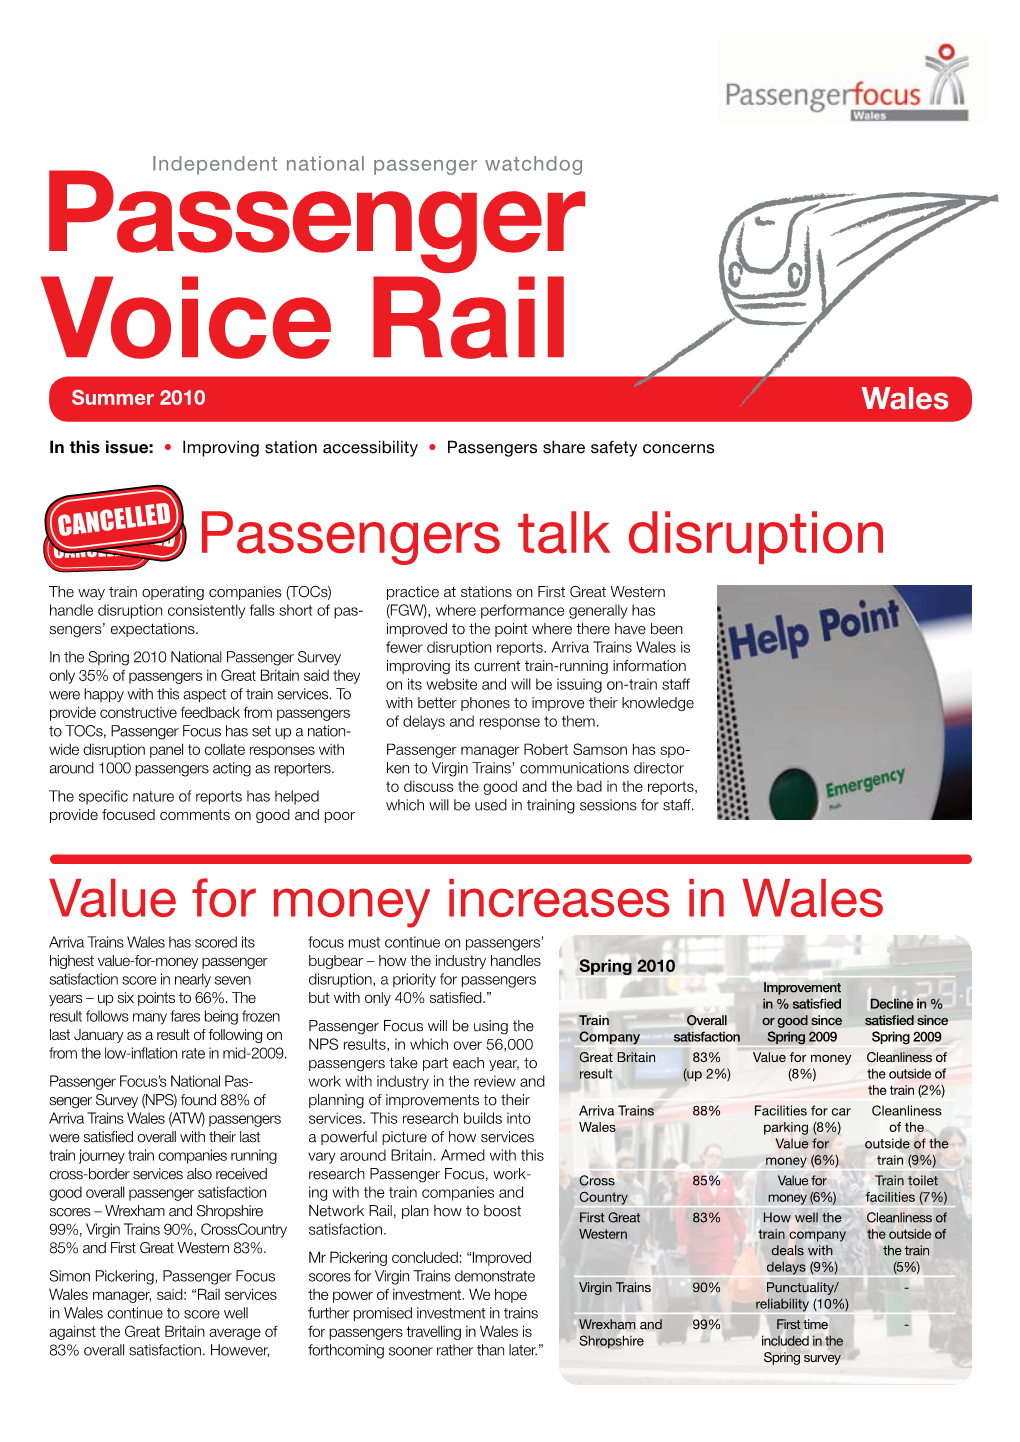 Passenger Voice Rail Wales